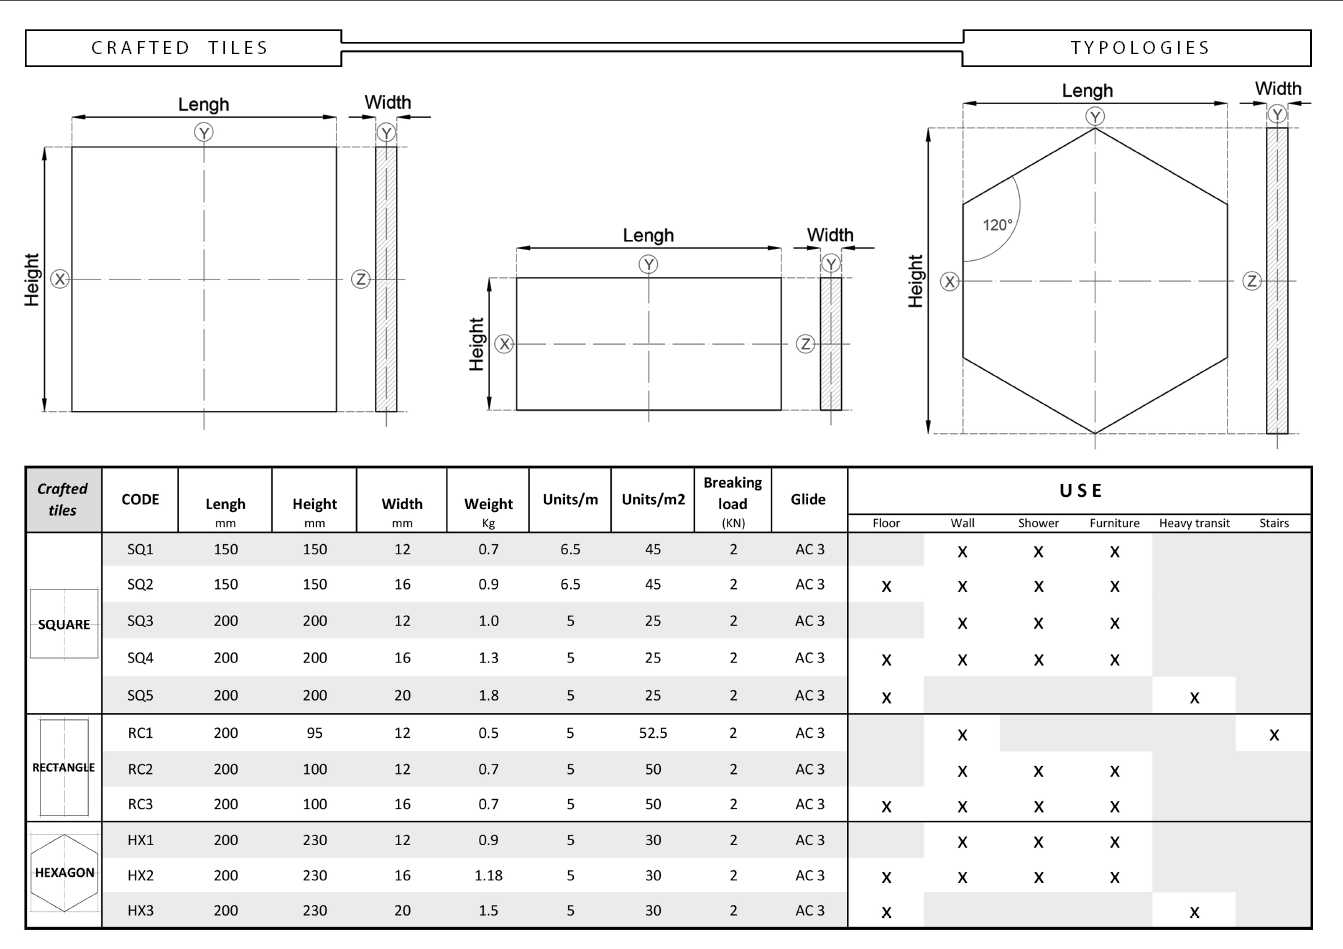 Technische Eigenschaften der Zement Dachziegel